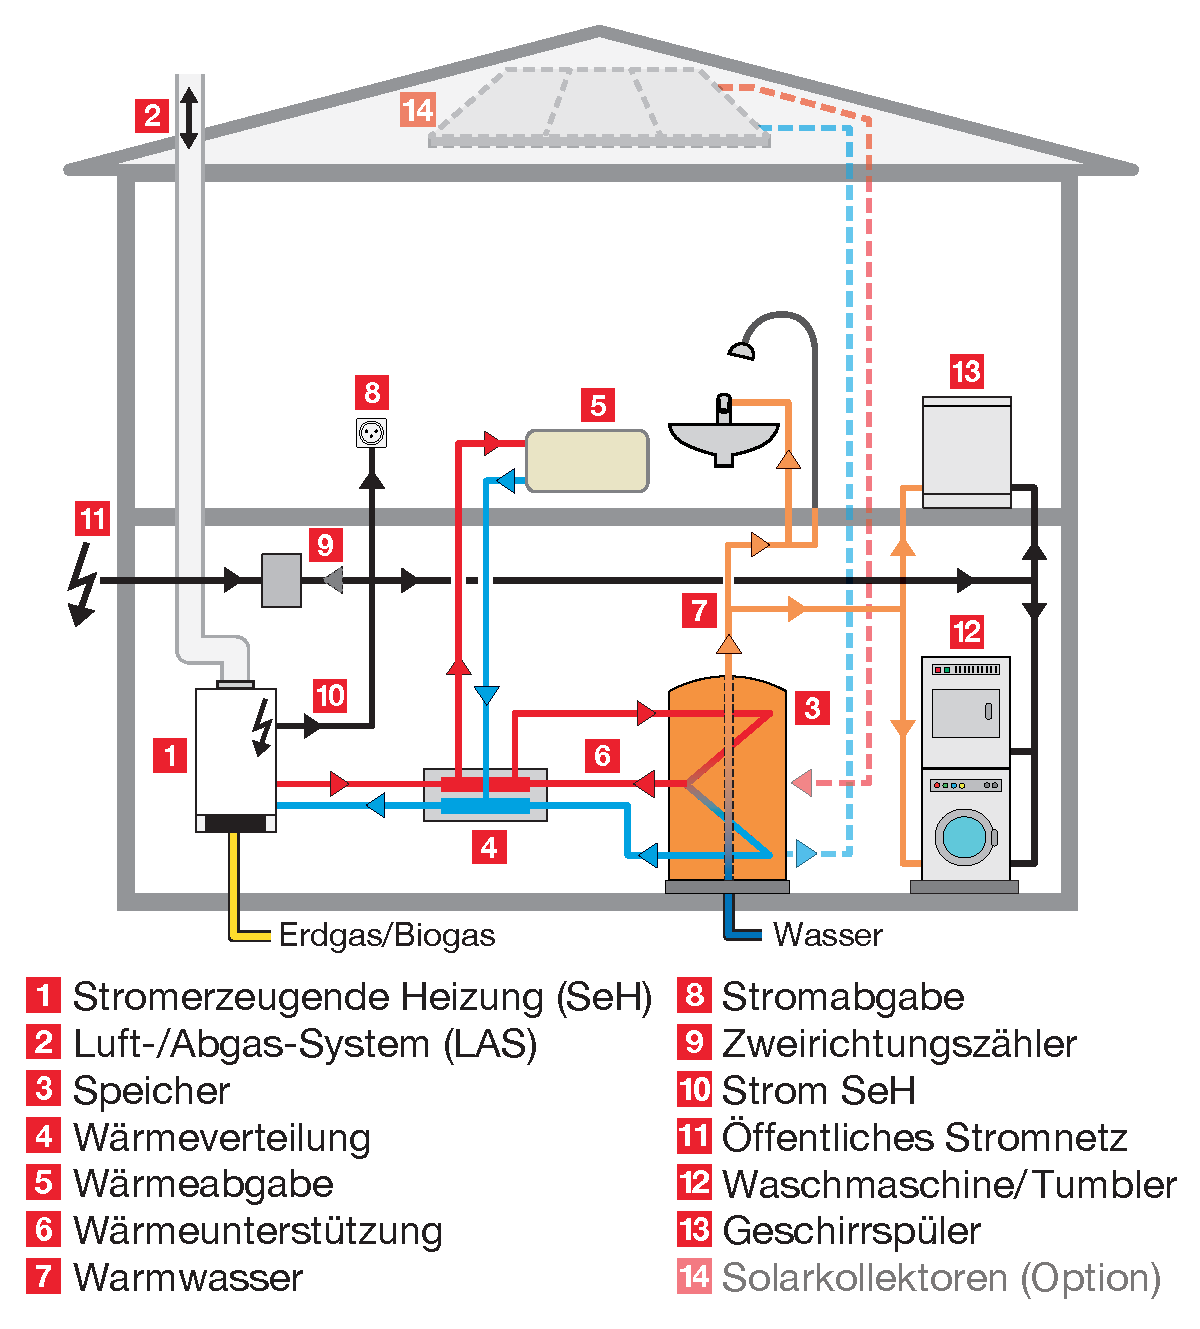 SeH - Stromerzeugende Heizung Wichtig zu wissen Vitotwin ist das einzig erhältliche Gerät Minergie-Zertifizierung (Stromerzeugung doppelt abziehbar) SeH-Strom im eigenen Haus nutzen >80% (je höher